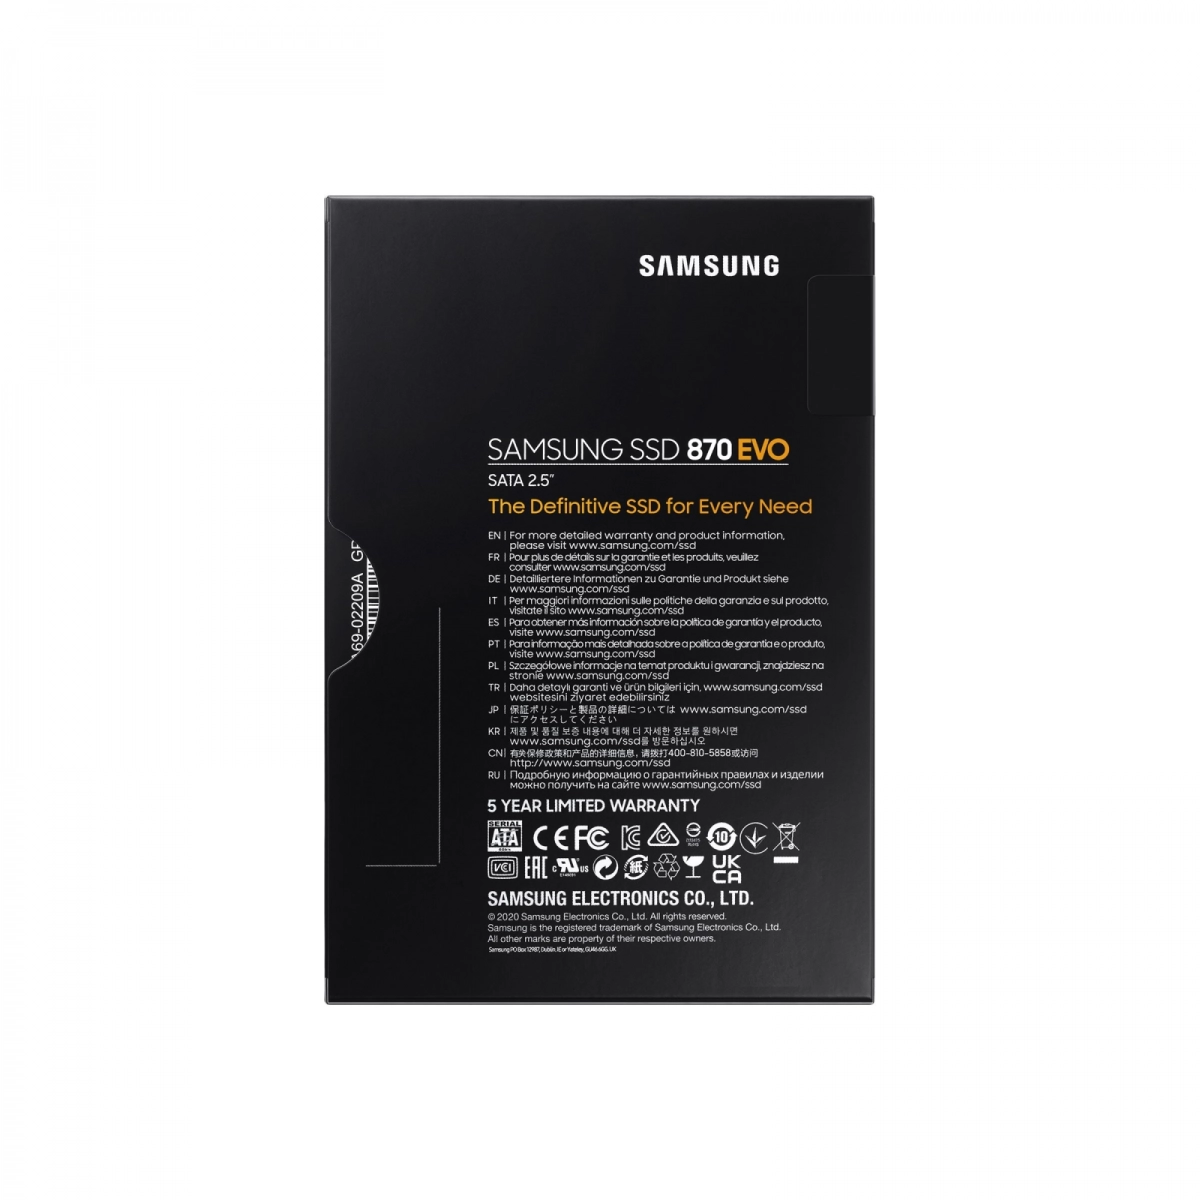 Notebook-Festplatte 1TB, SSD SATA3 für LENOVO ThinkPad Edge E531 (6885)